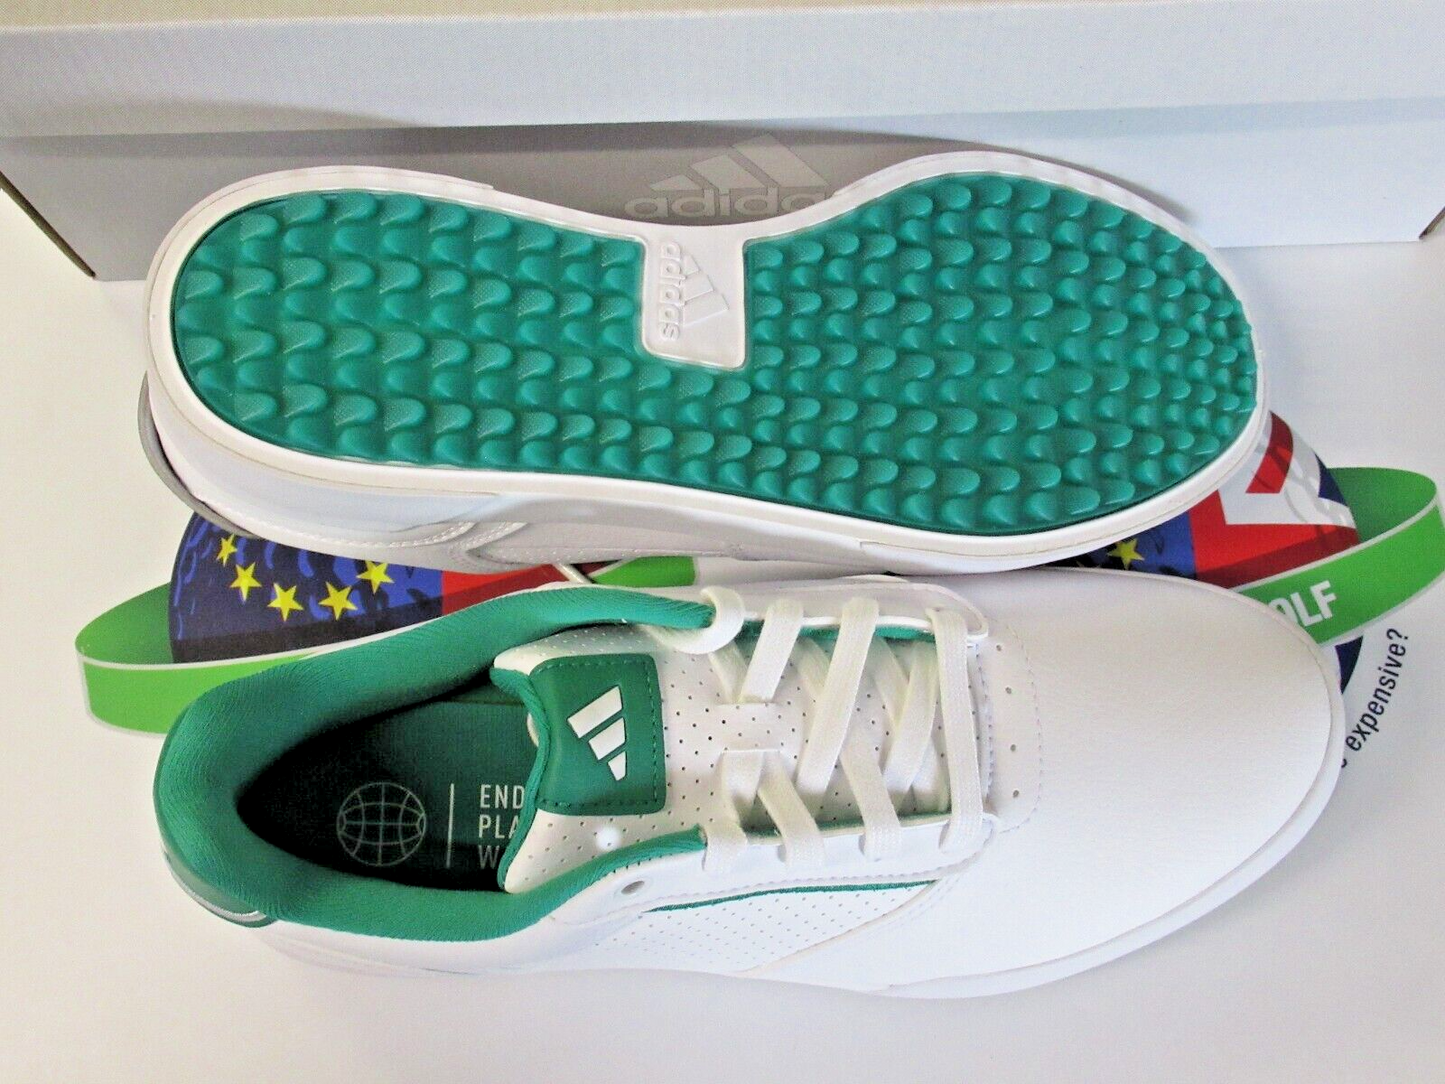 adidas retrocross white/green waterproof golf shoes uk size 10.5 wide